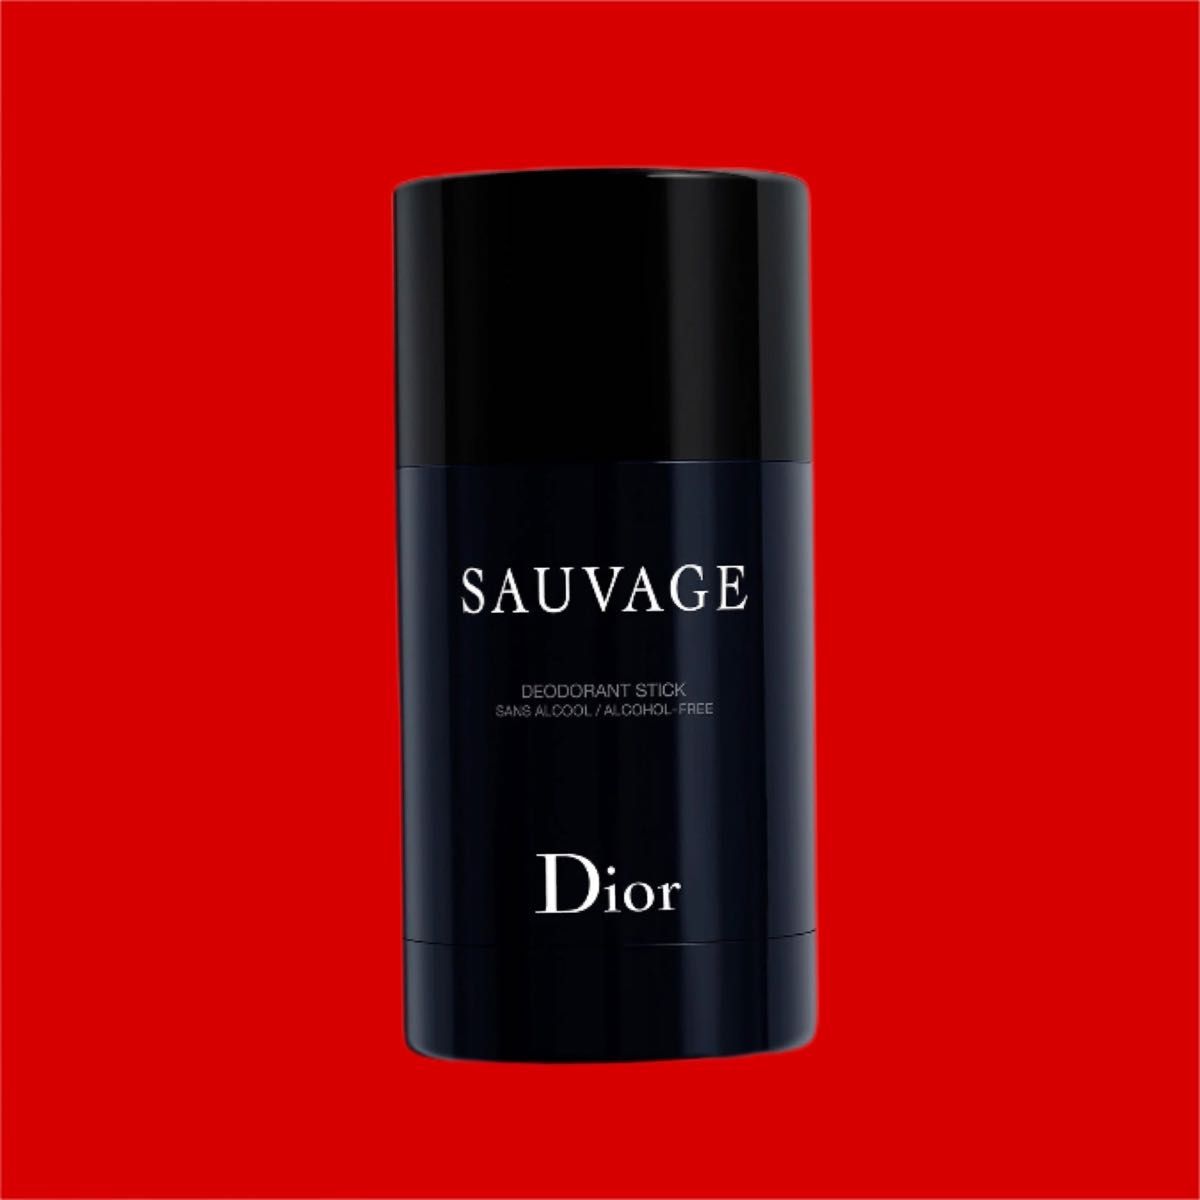 Dior SAUVAGE ソヴァージュ パフュームボディスティック 練り香水 ギフト プレゼント ソバージュ モテ香水 人気